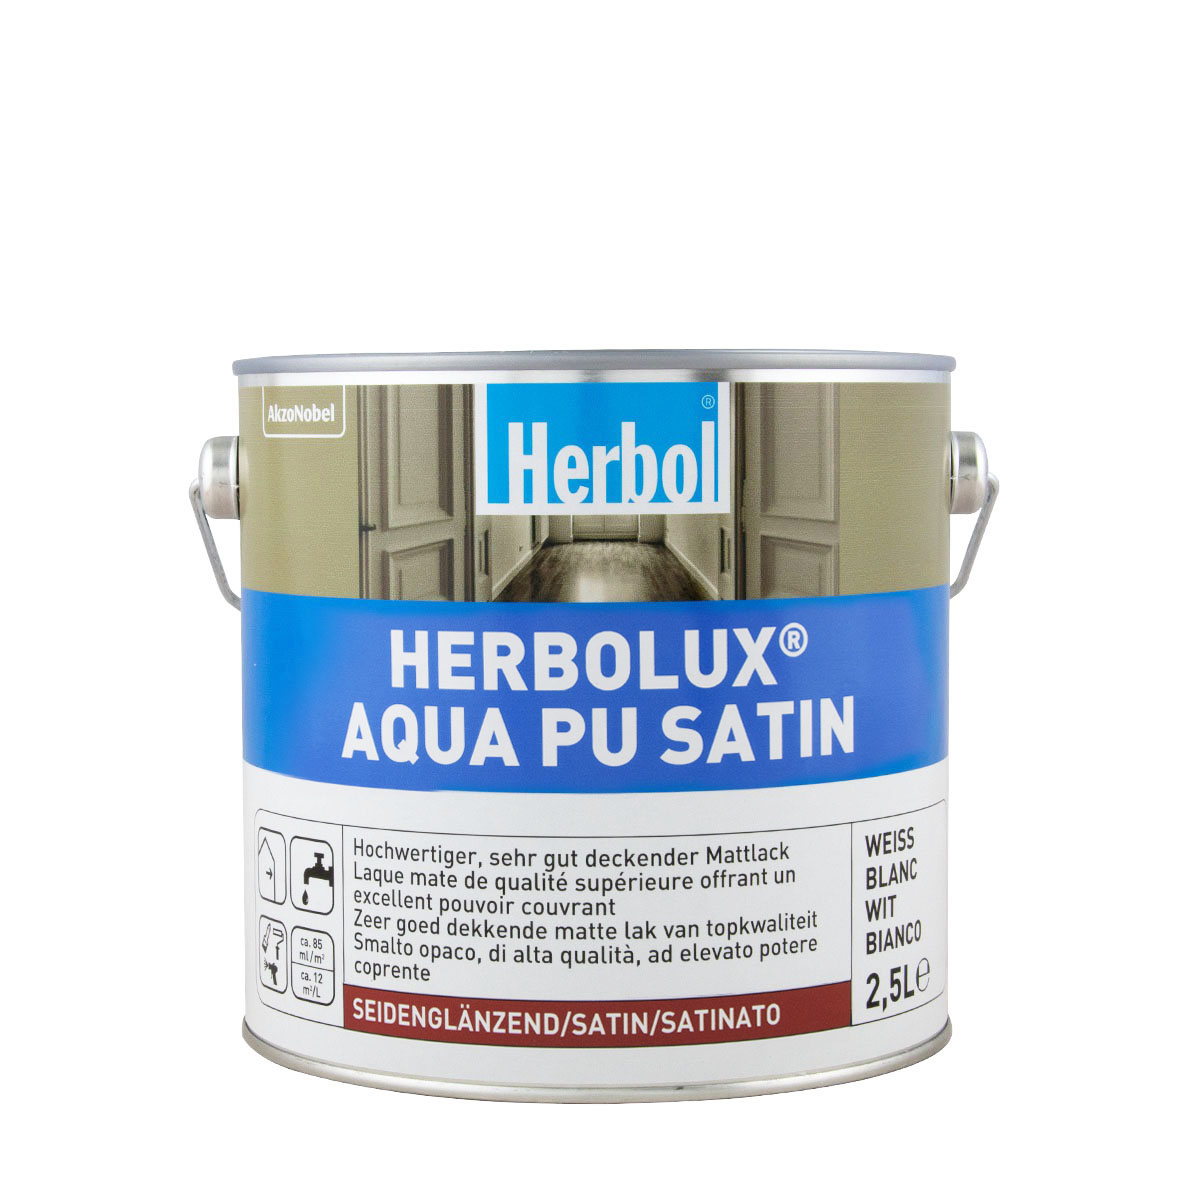 Herbol_herbolux_aqua_pu_satin_2,5l_gross